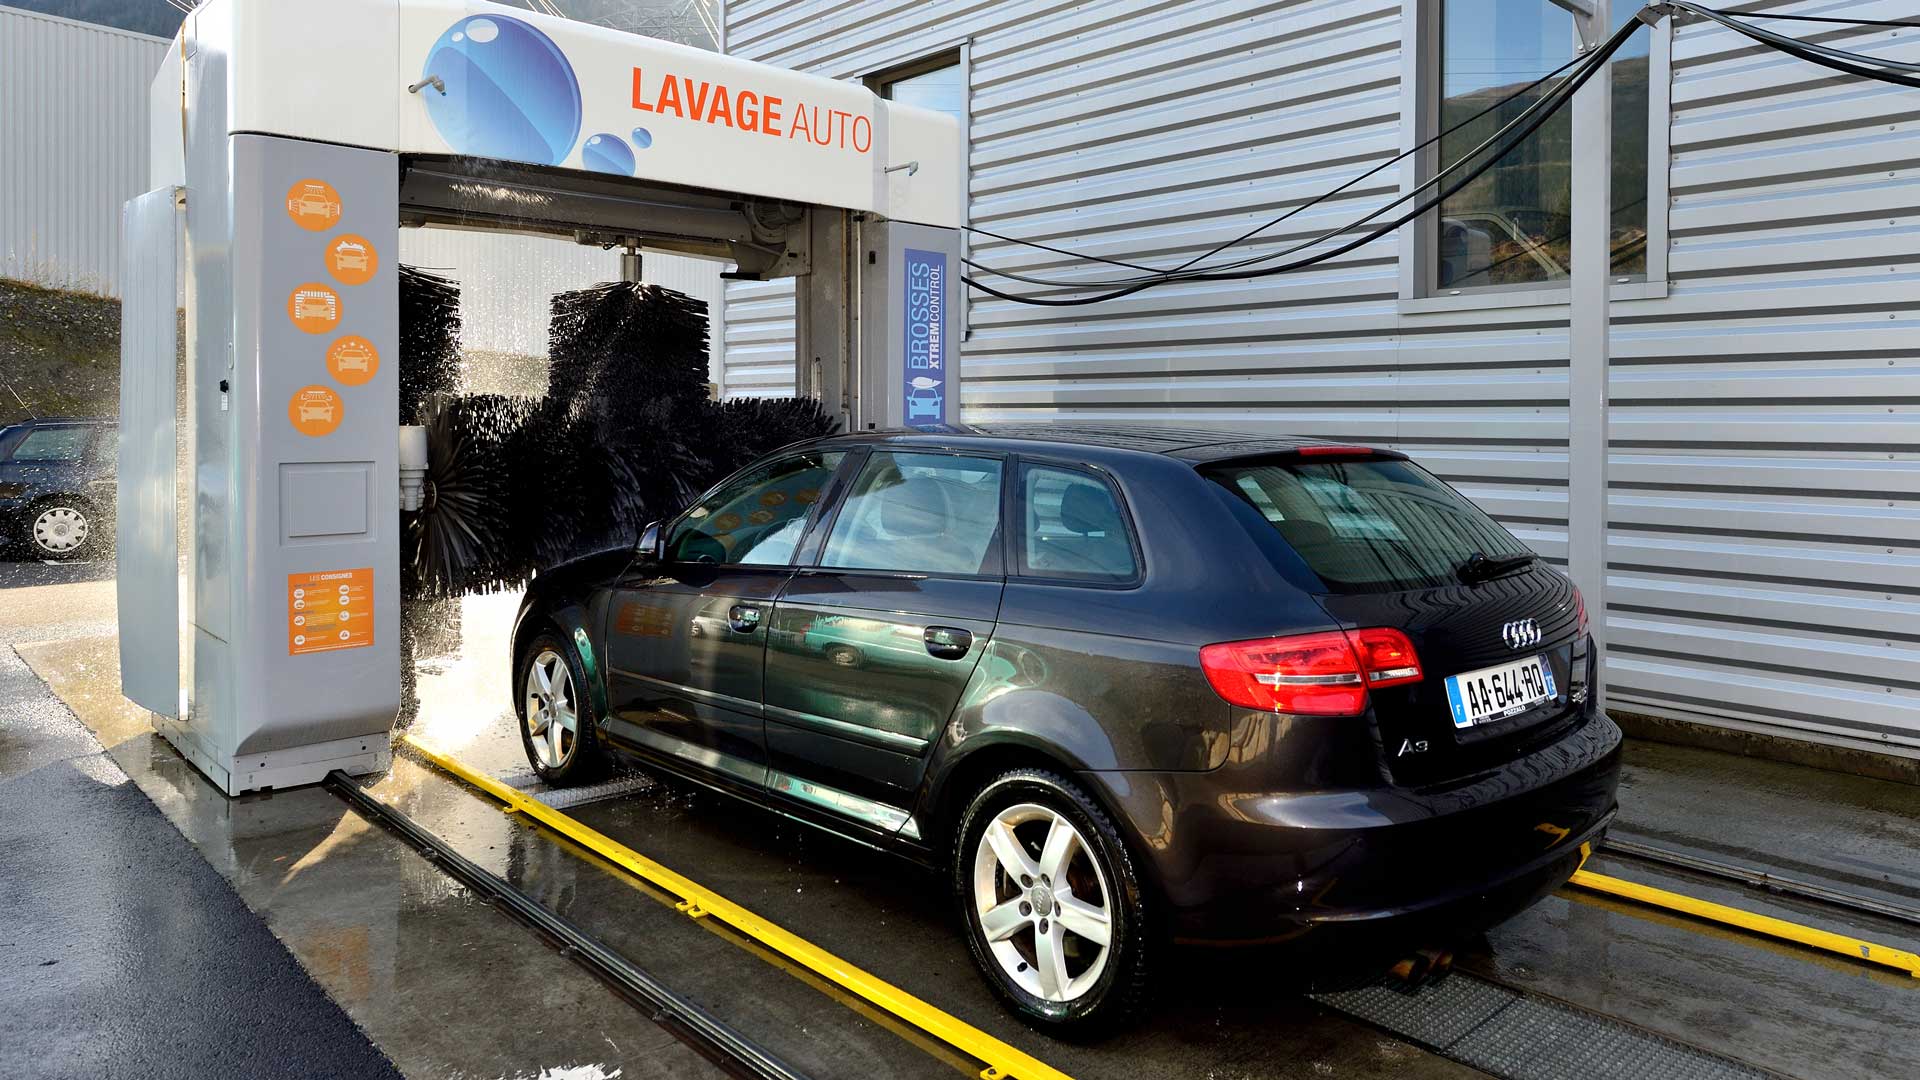 Station de lavage Pozzalo Automobile Volkswagen Bourg-Saint-Maurice